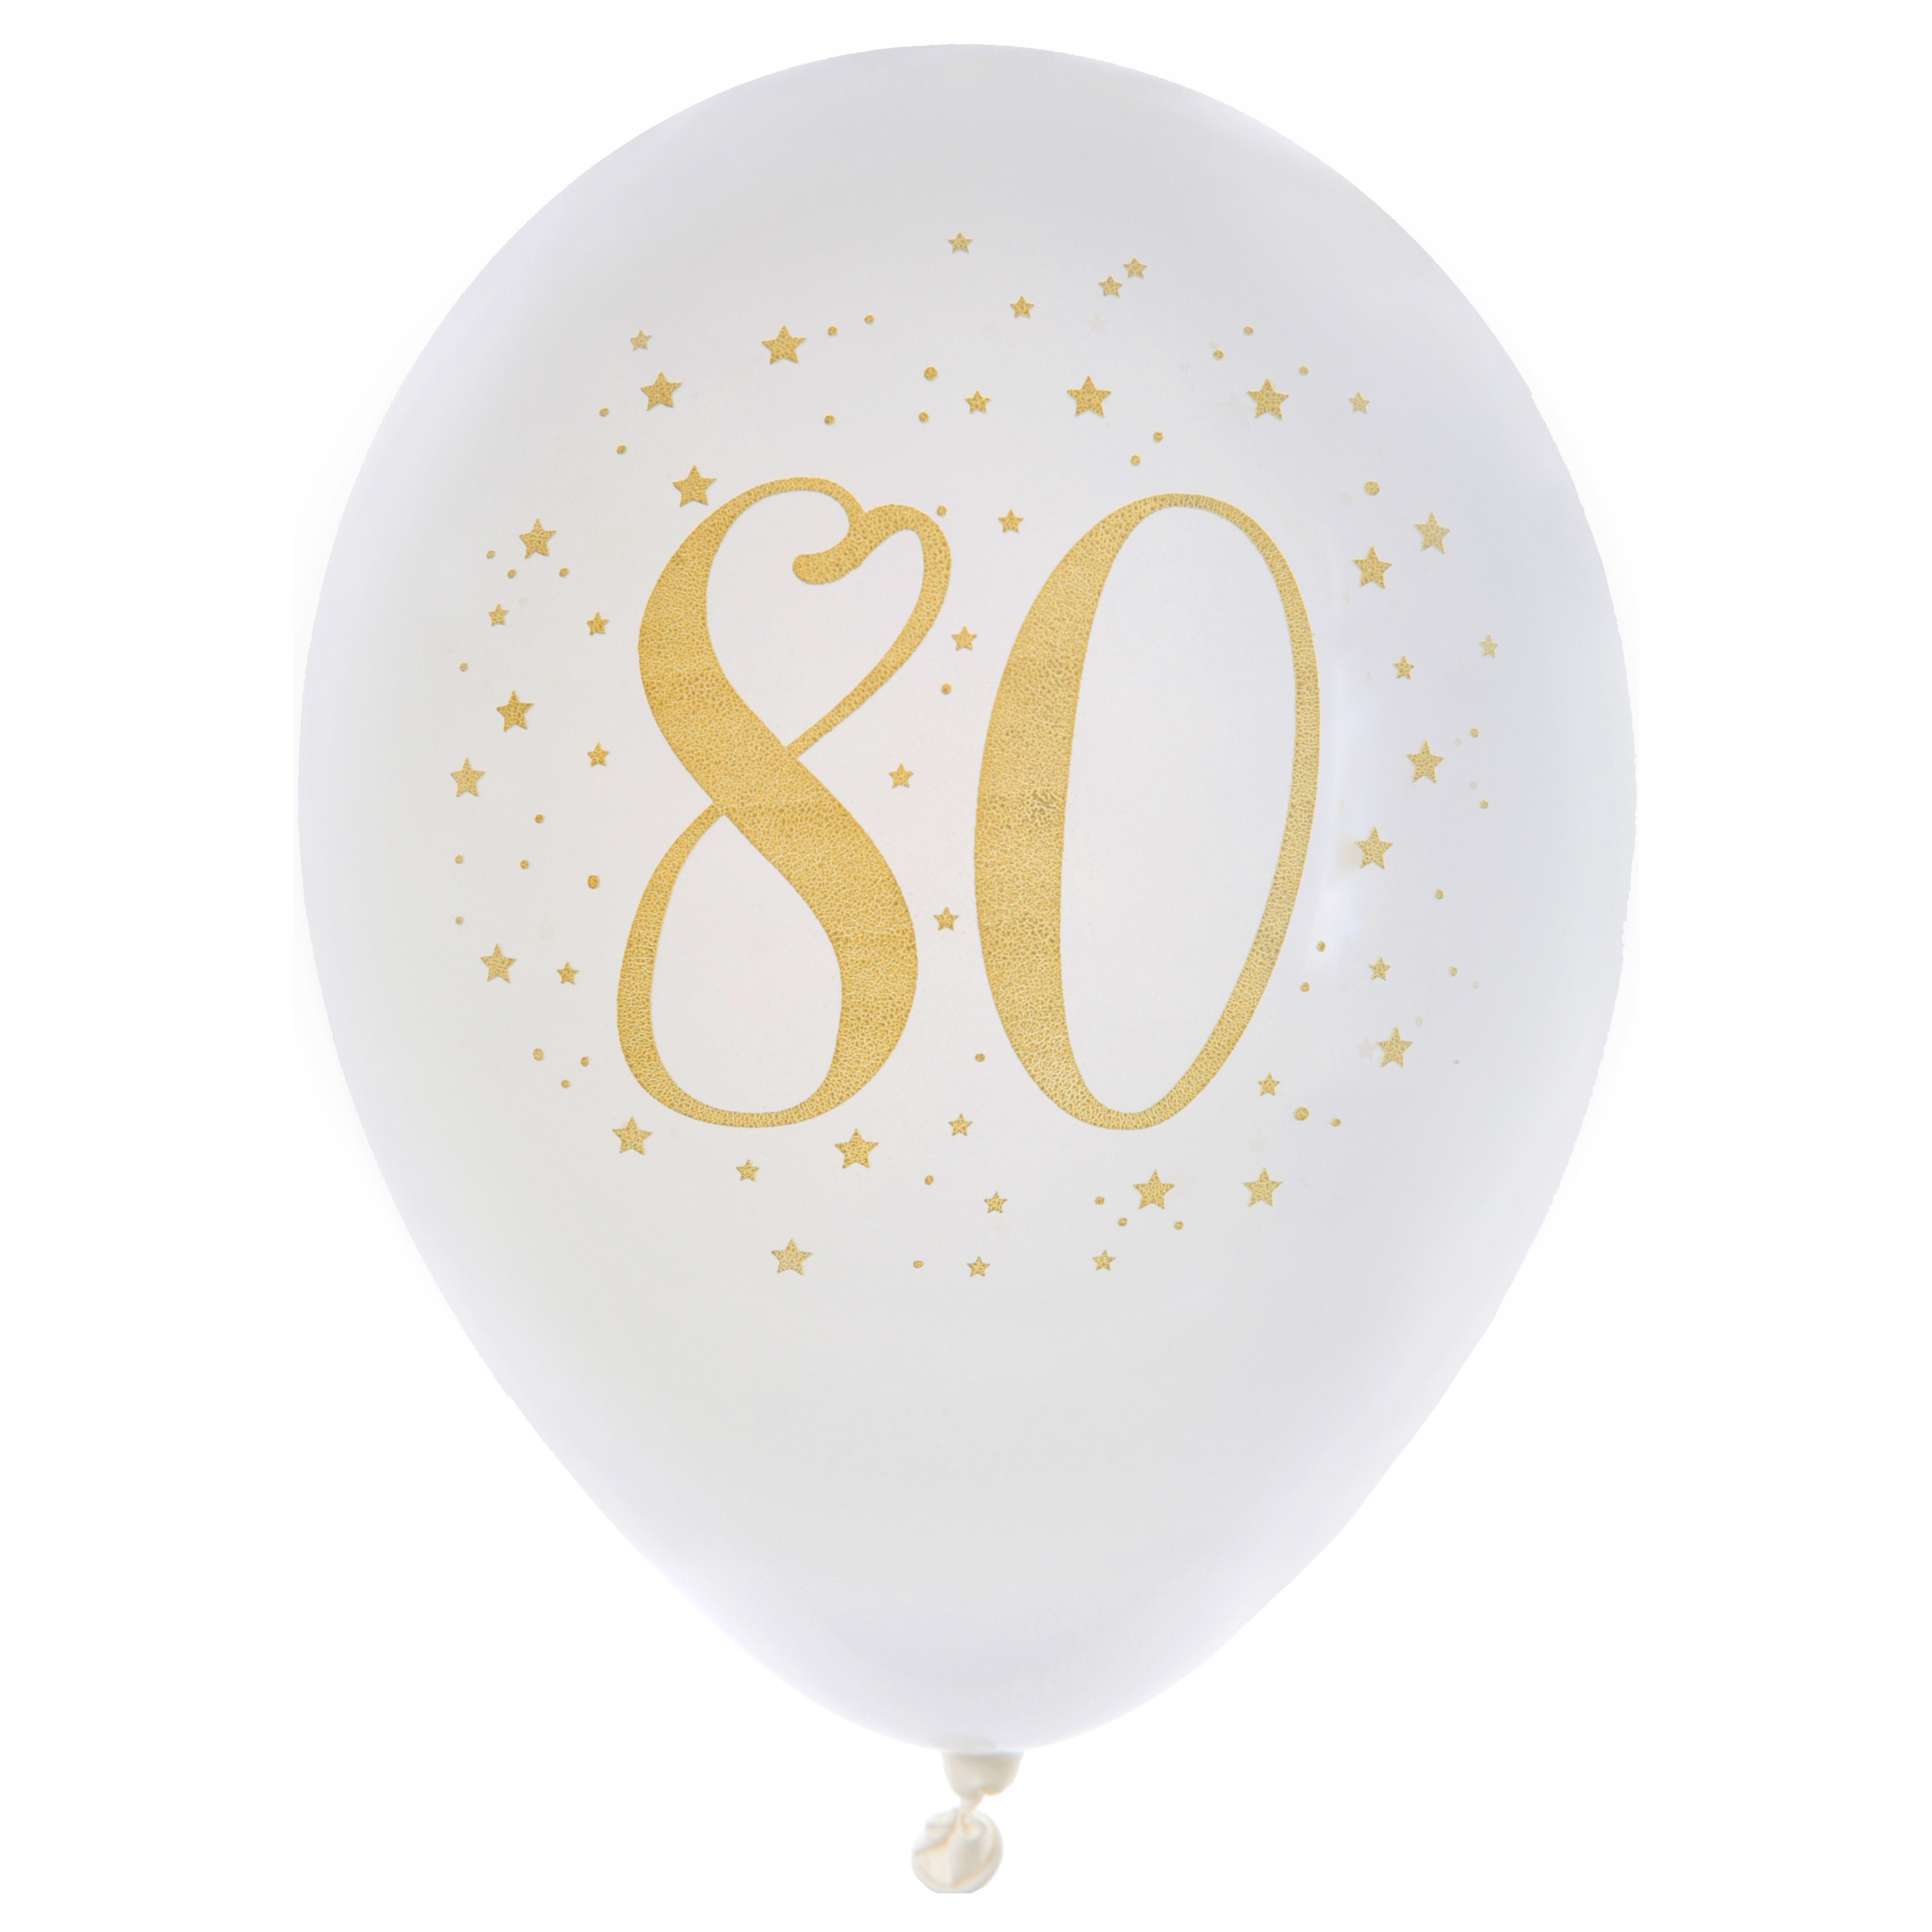 Santex verjaardag leeftijd ballonnen 80 jaar - 8x stuks - wit/goud - 23 cm - Feestartikelen